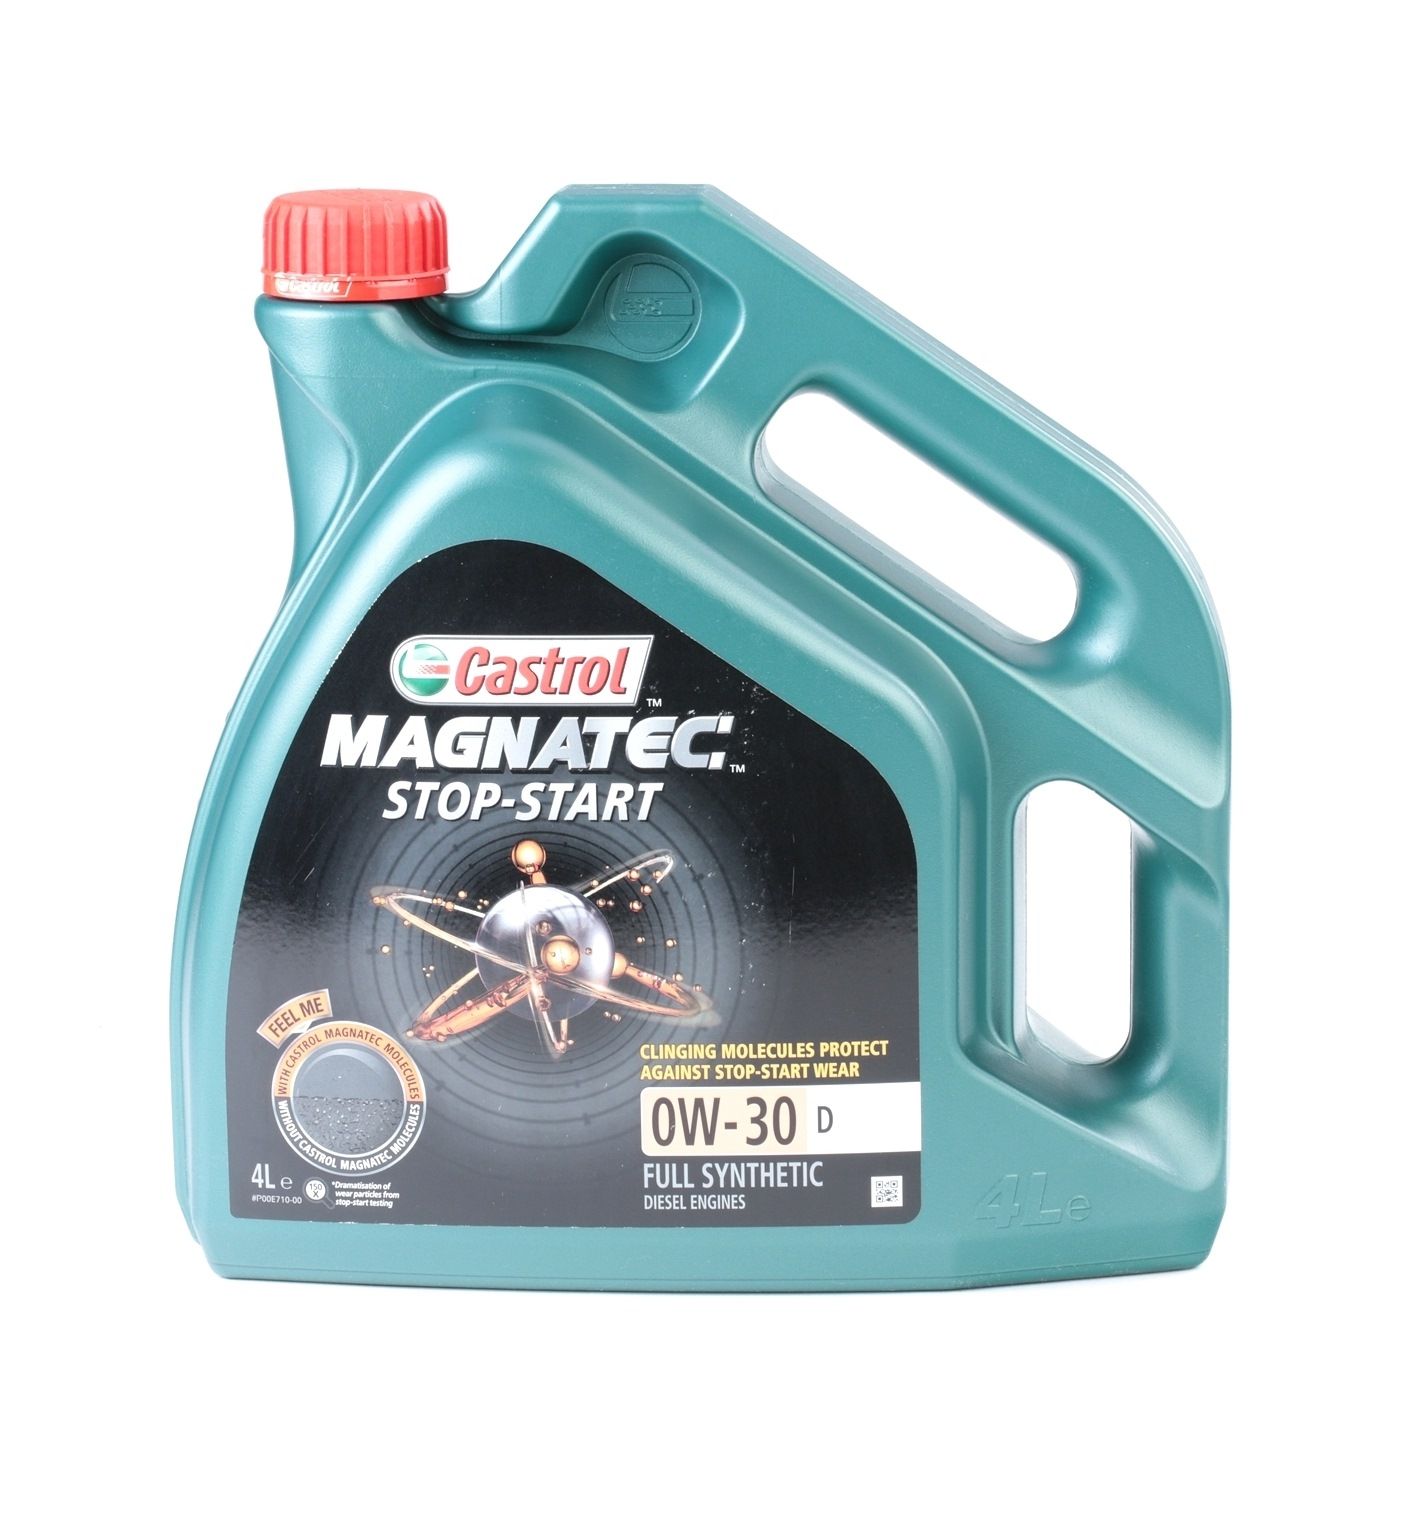 Aceite de motor CASTROL Magnatec, Stop-Start D 159C6A 0W-30, 4L, Aceite